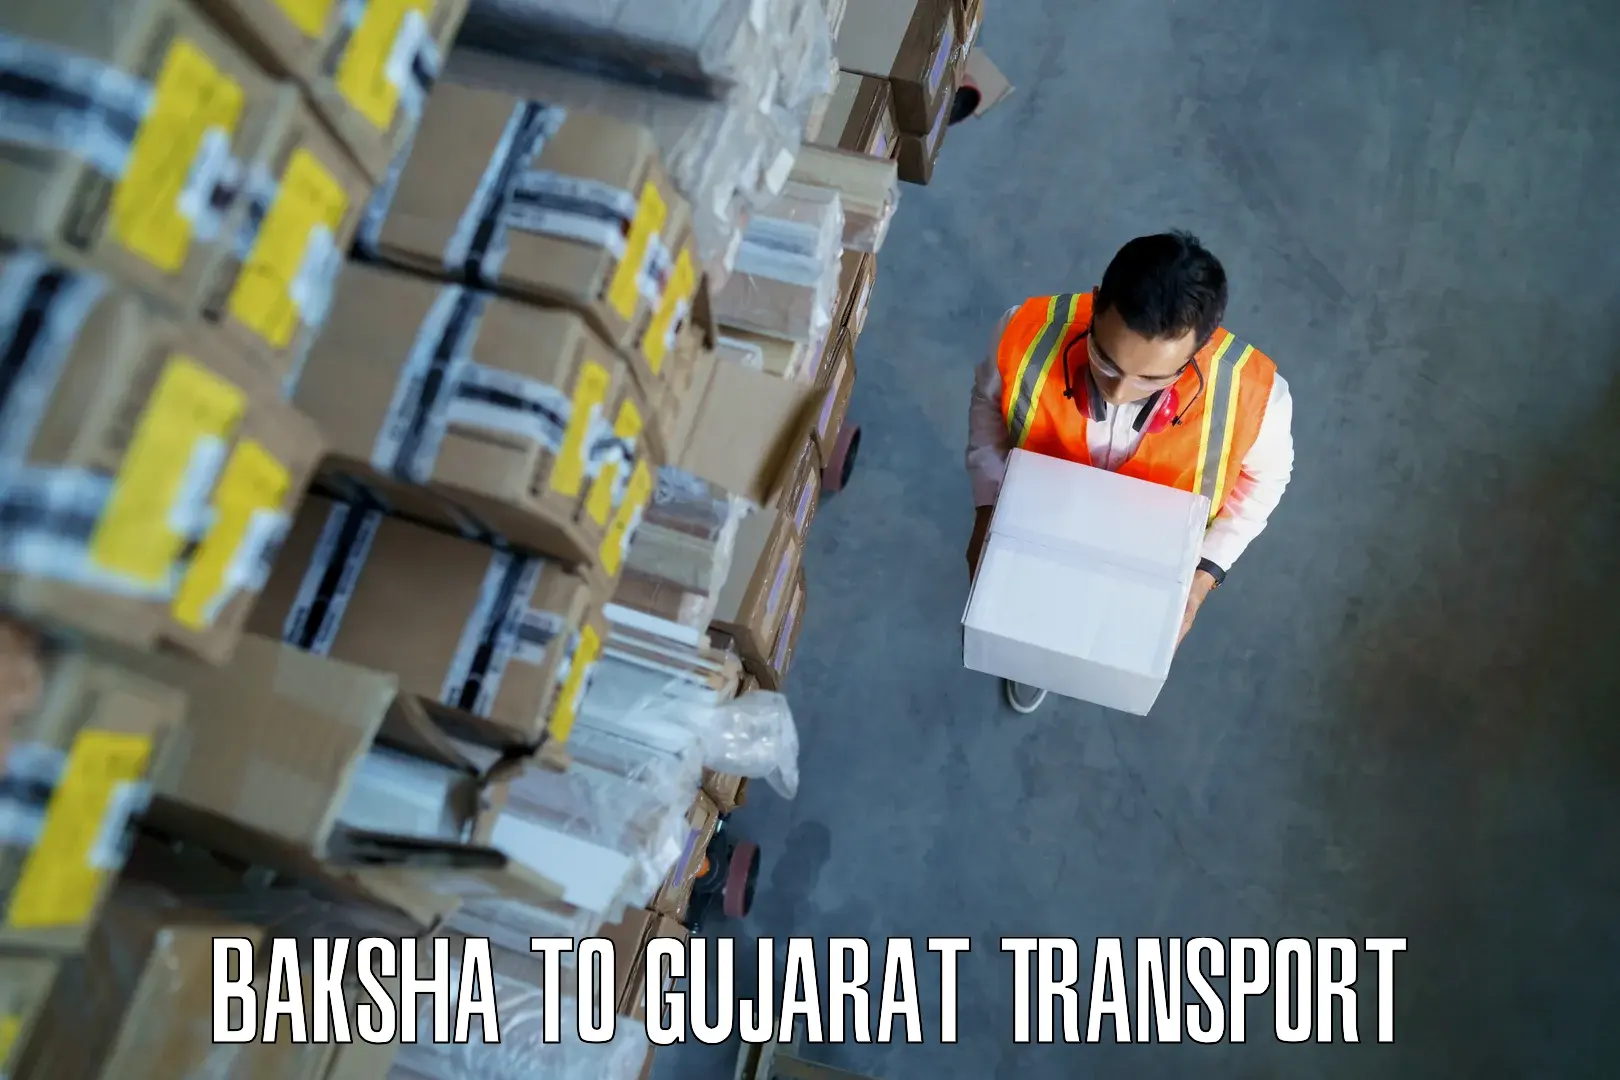 Vehicle transport services Baksha to Bilimora